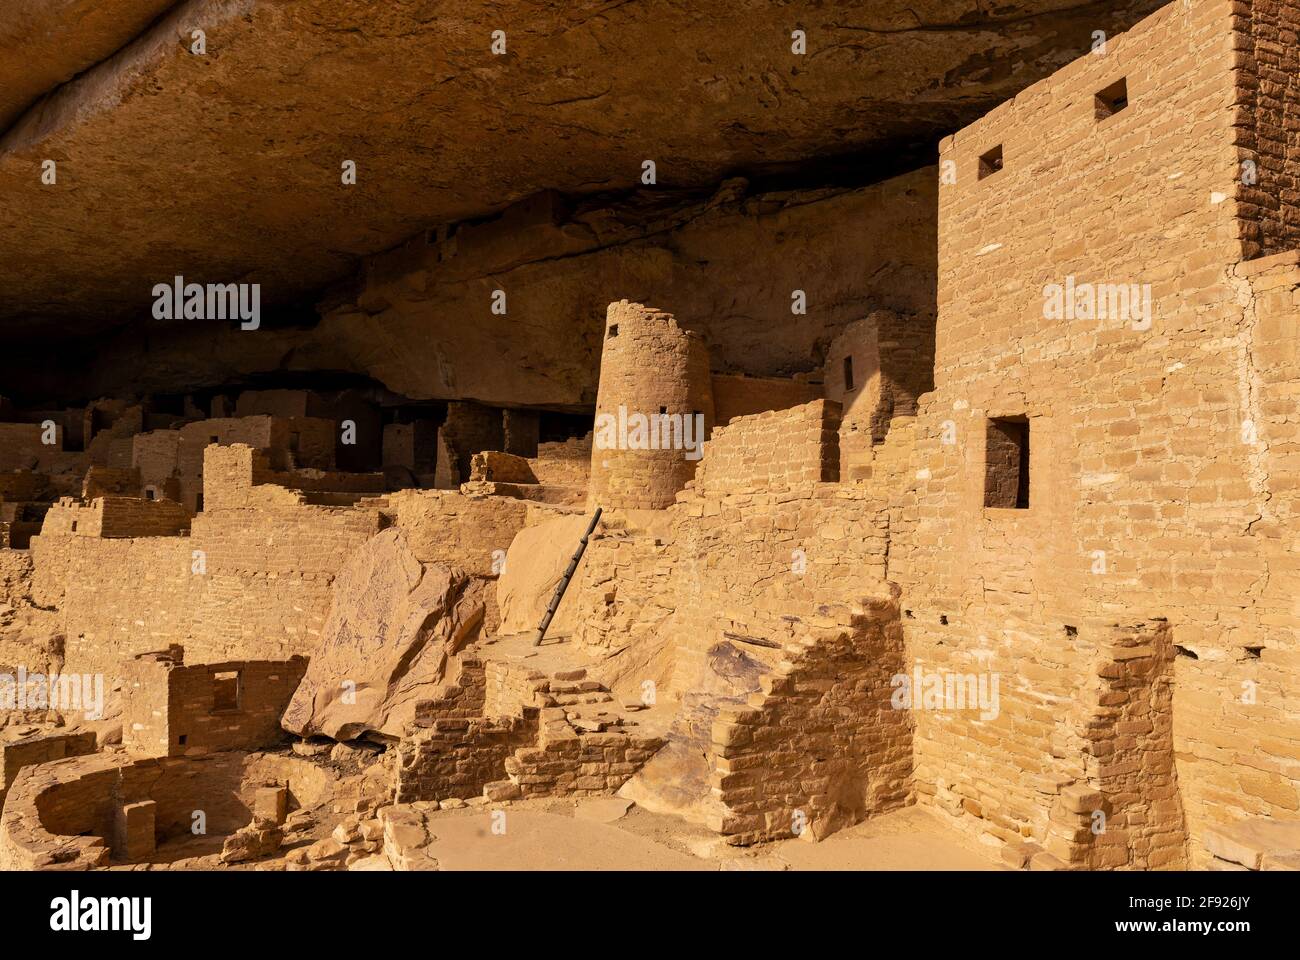 Nahaufnahme der Pueblo-Architektur im Cliff Palace, Mesa Verde Nationalpark, Colorado, Vereinigte Staaten von Amerika (USA). Stockfoto